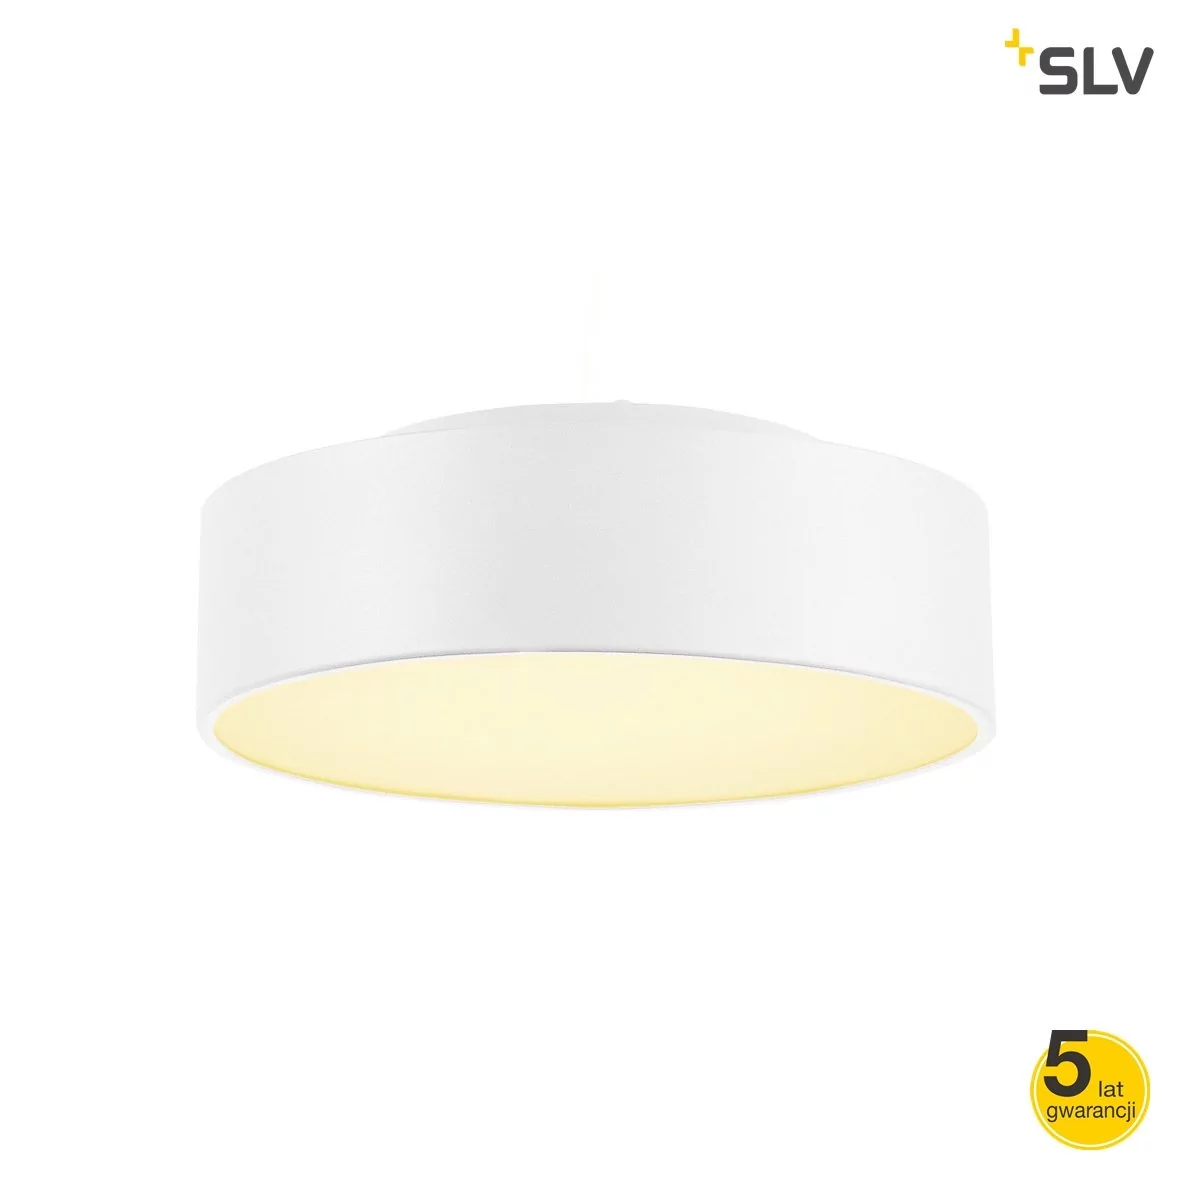 SLV SPOTLINE MEDO 30 LED lampa sufitowa biała 135021